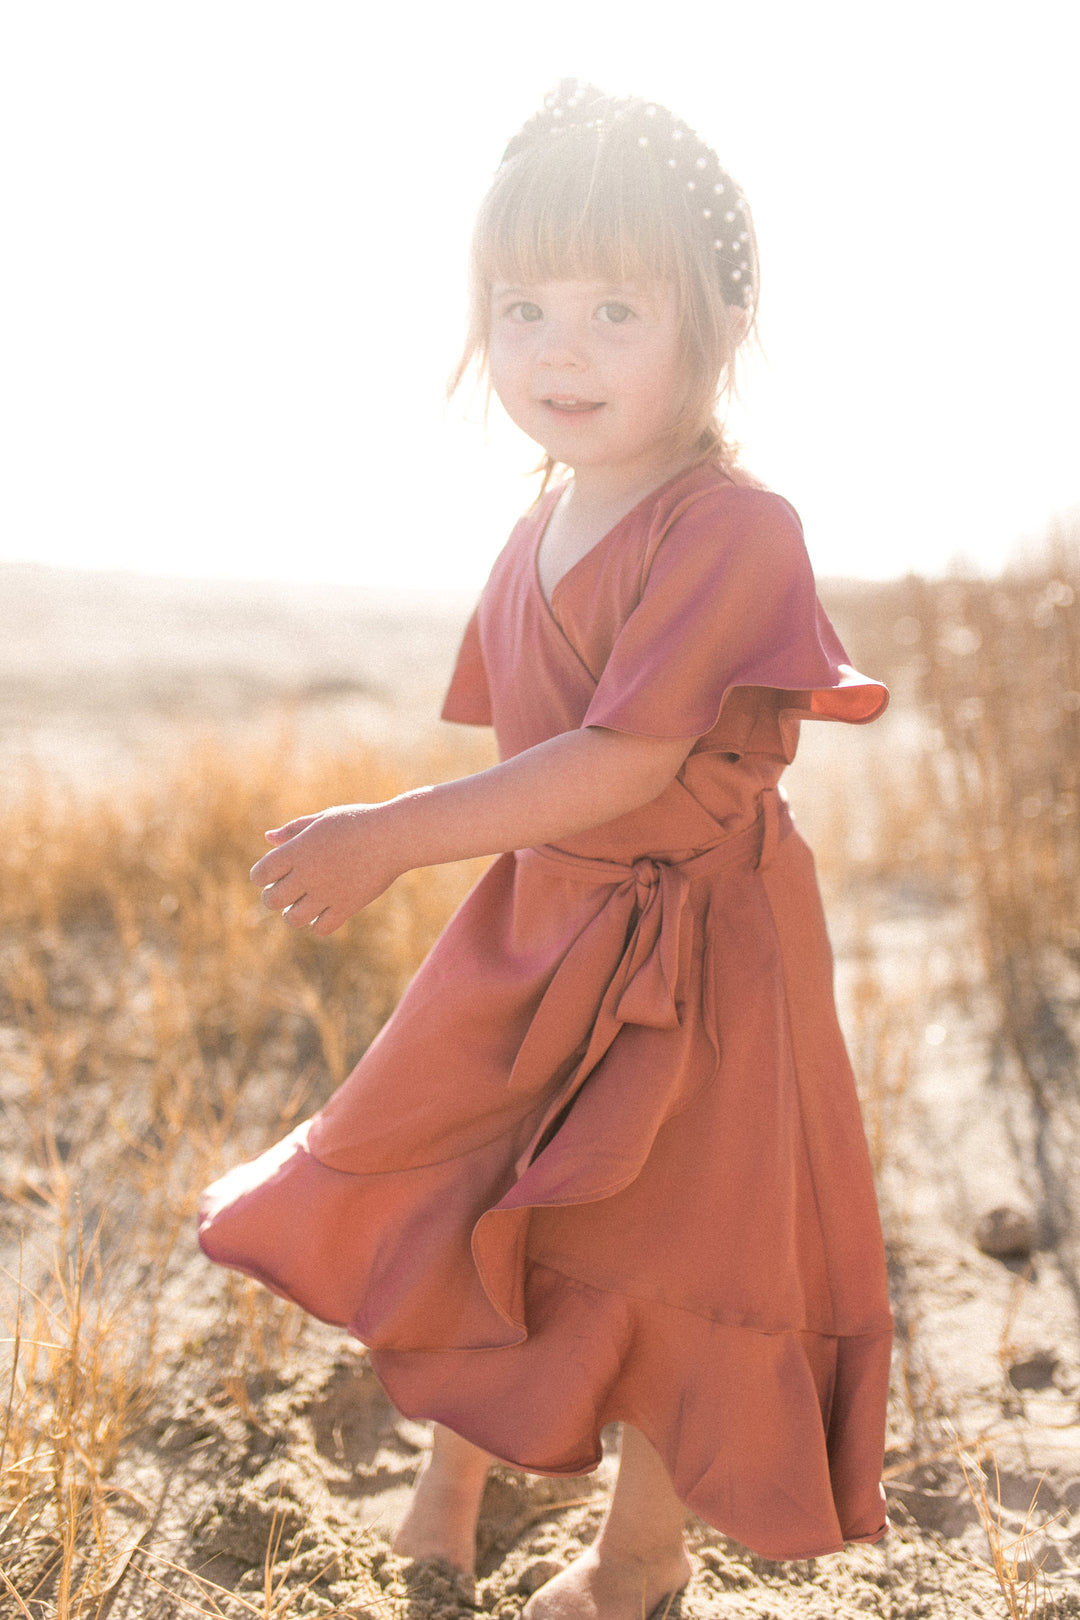 Mini Maggie Dress in Desert Rose - FINAL SALE